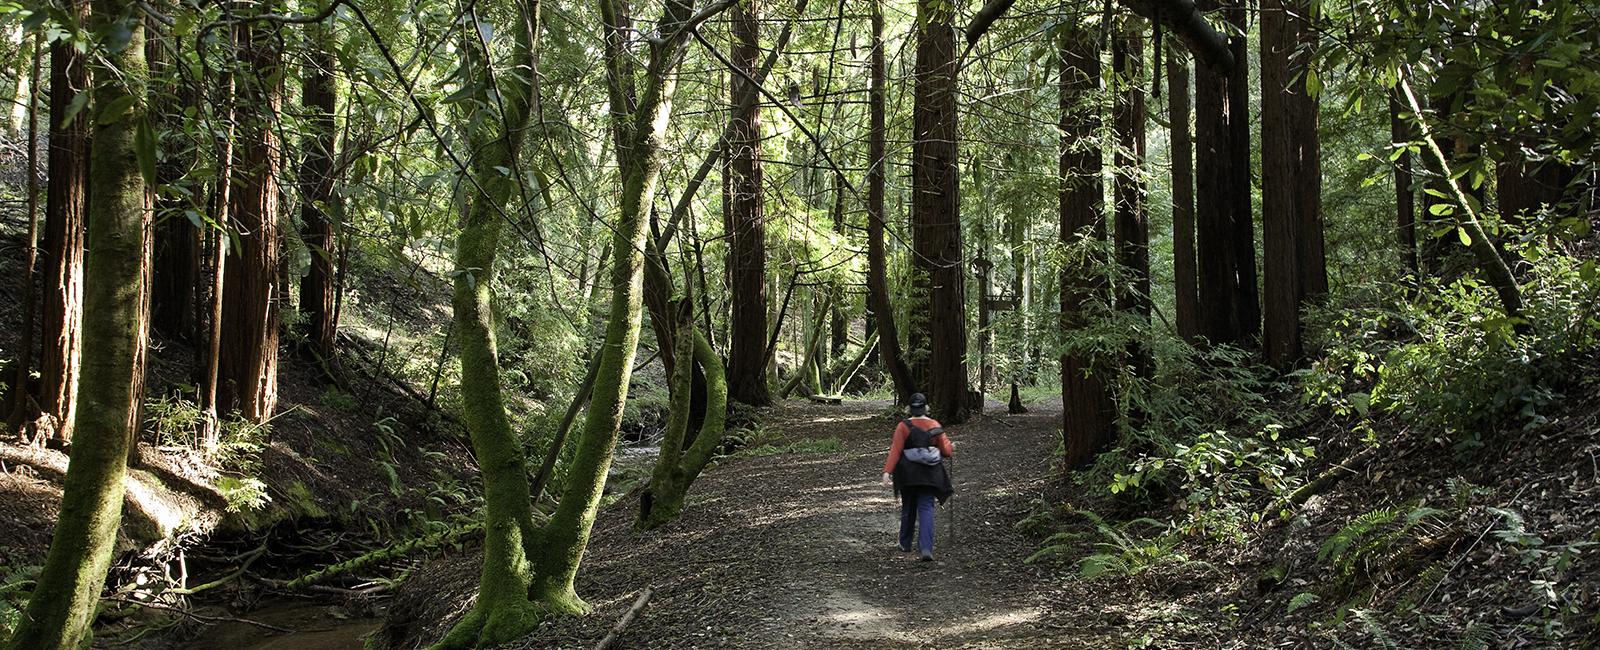 Hiking among redwoods